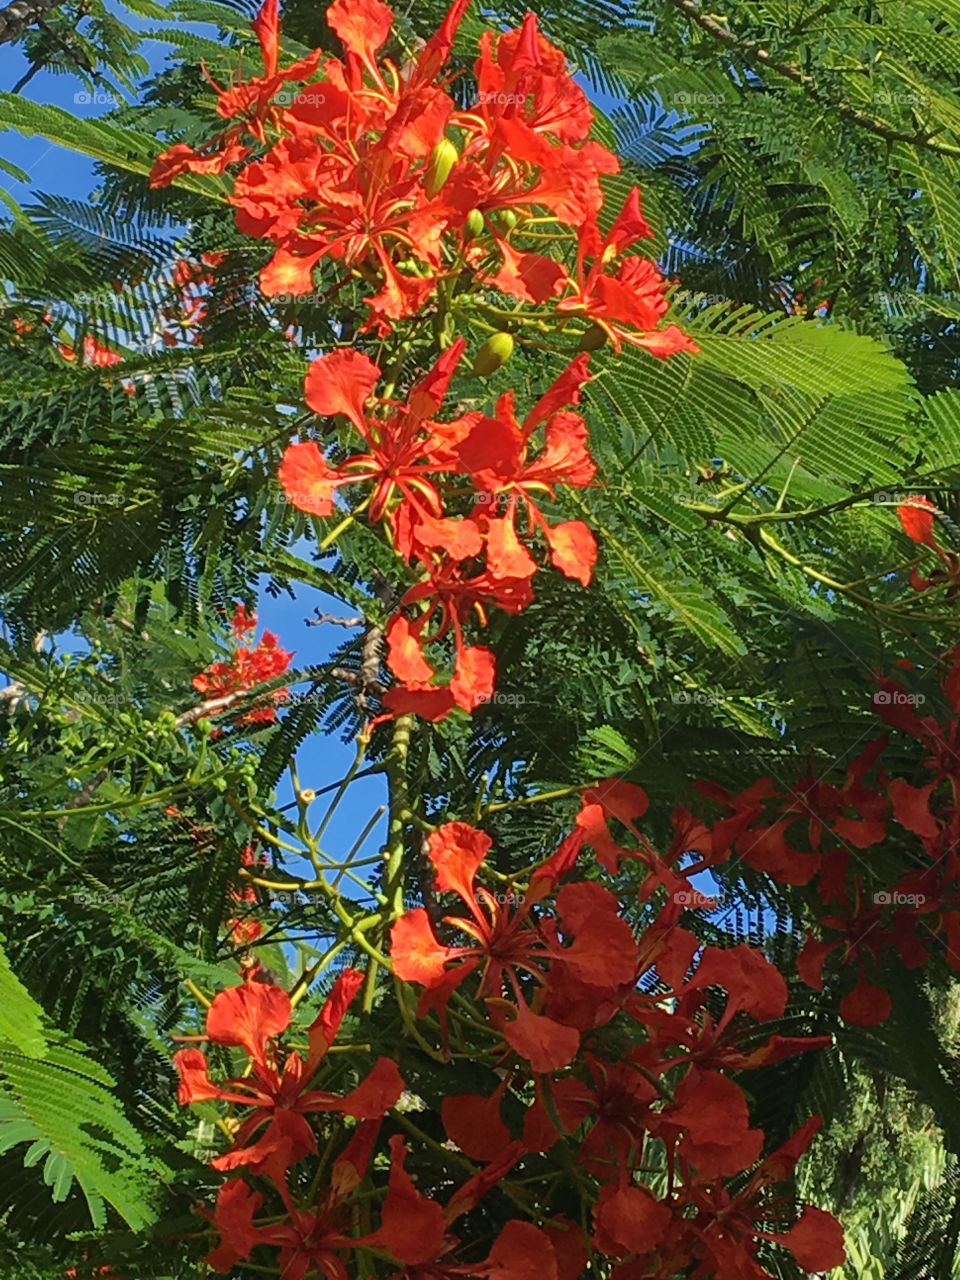 Flowering trees Bermuda